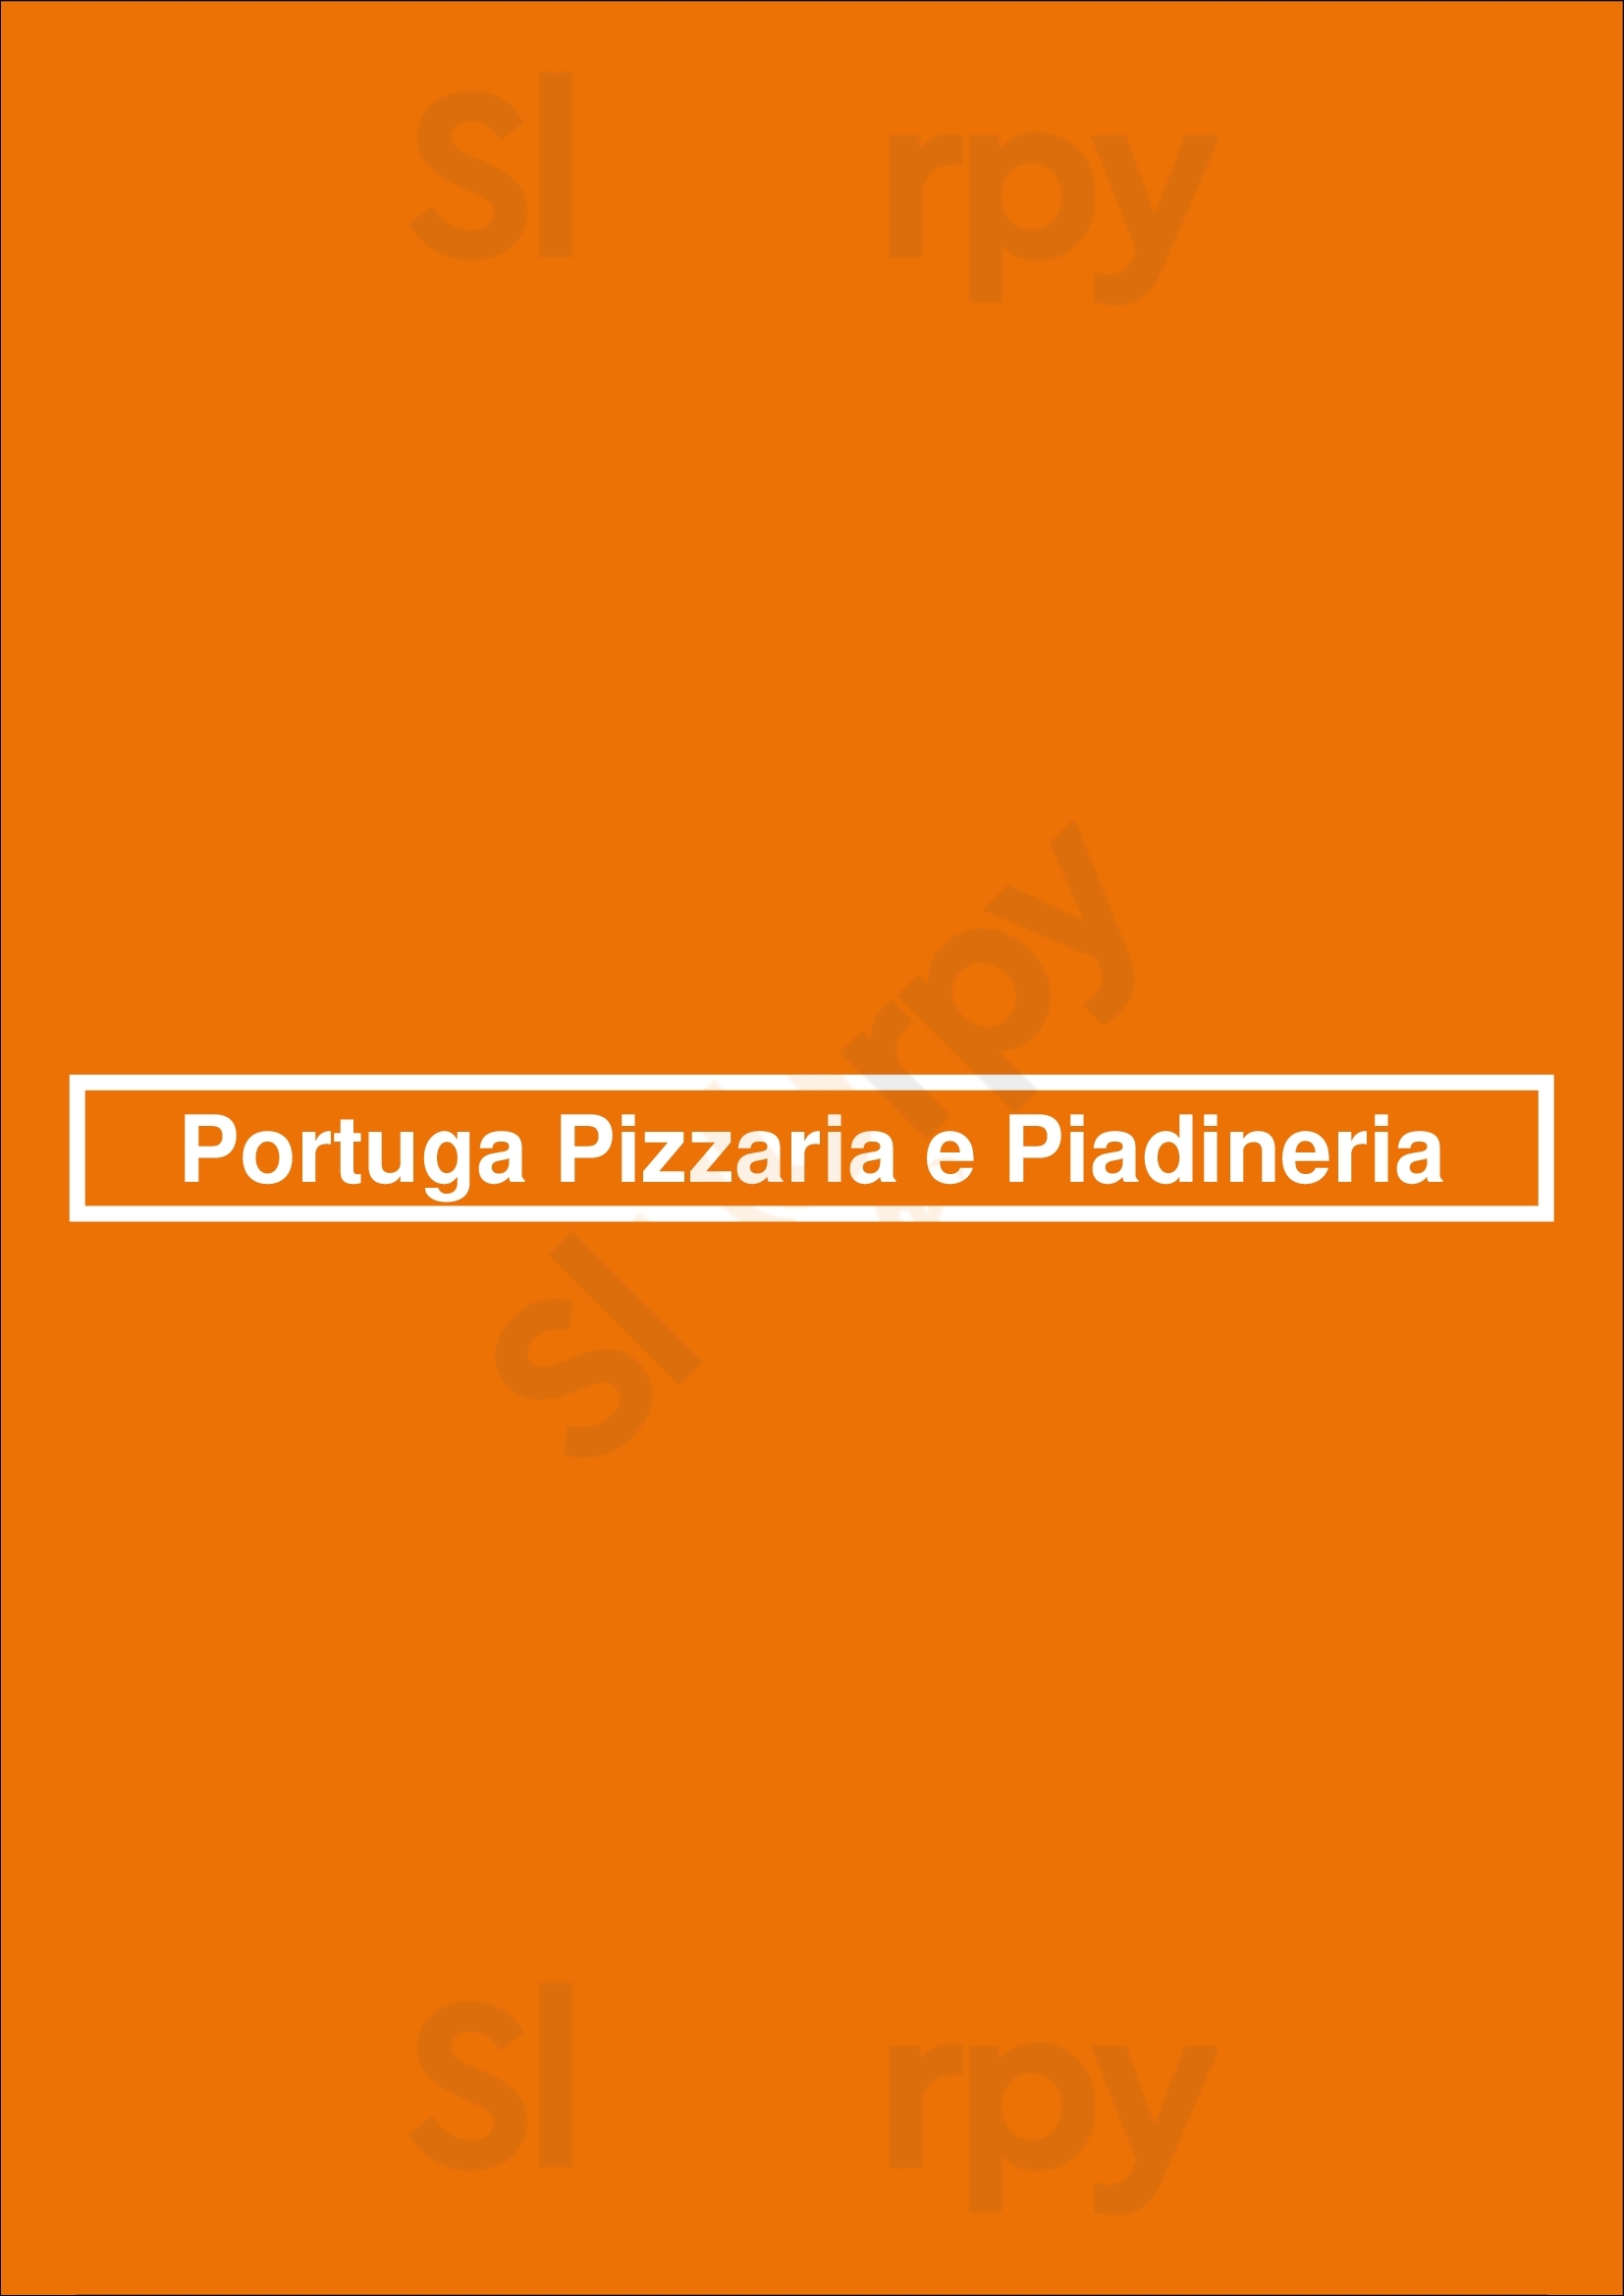 Portuga Pizzaria E Piadineria Vila Nova de Gaia Menu - 1